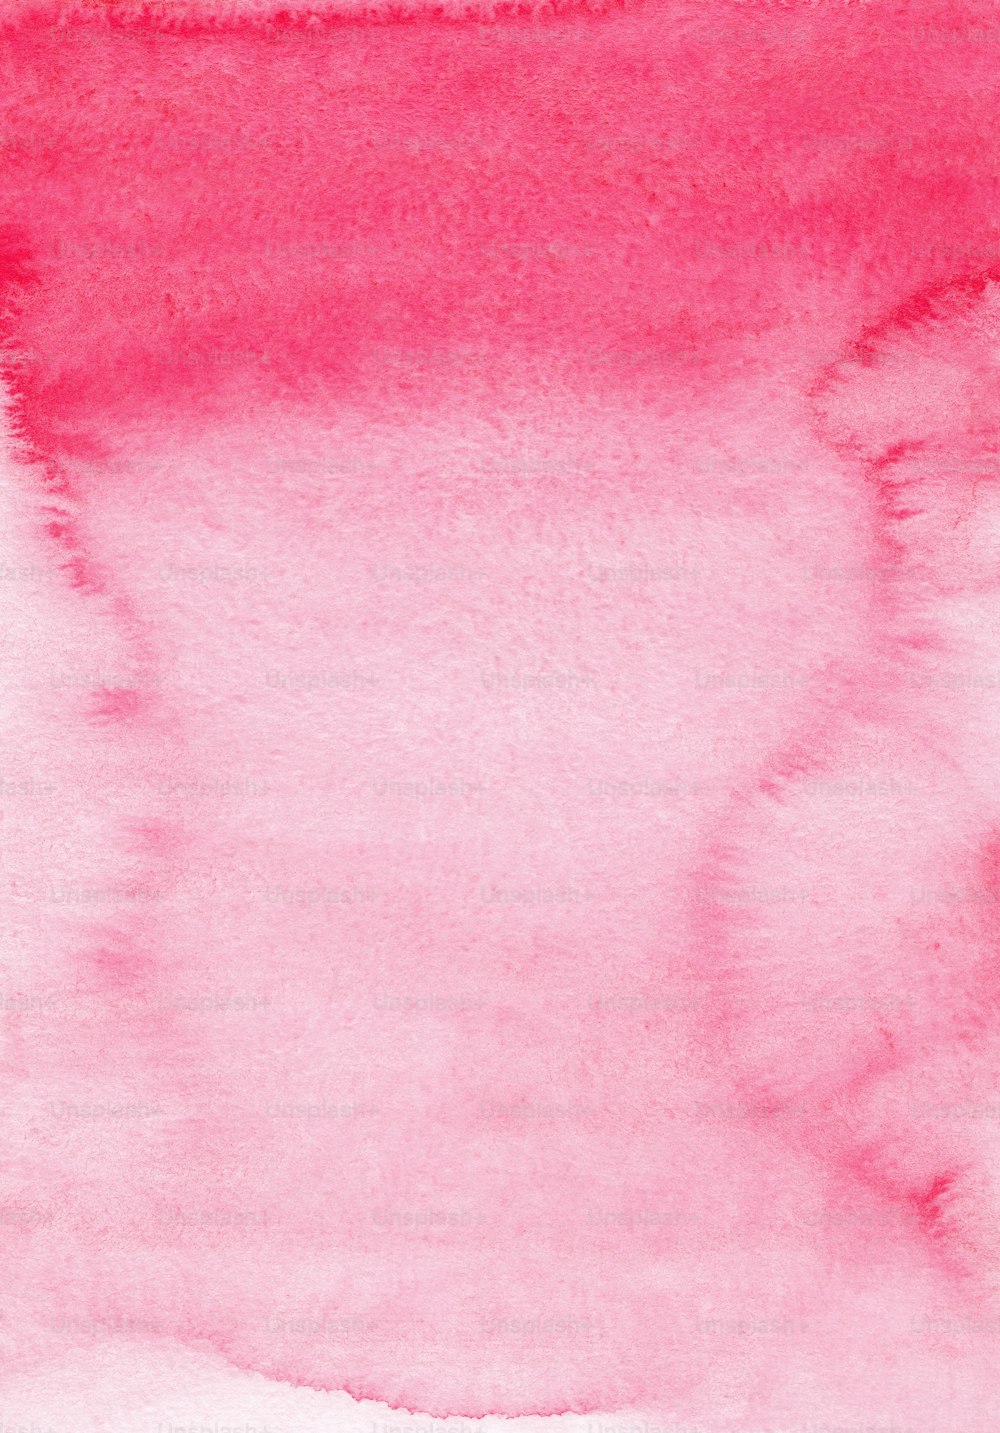 흰색 테두리가 있는 분홍색 수채화 배경